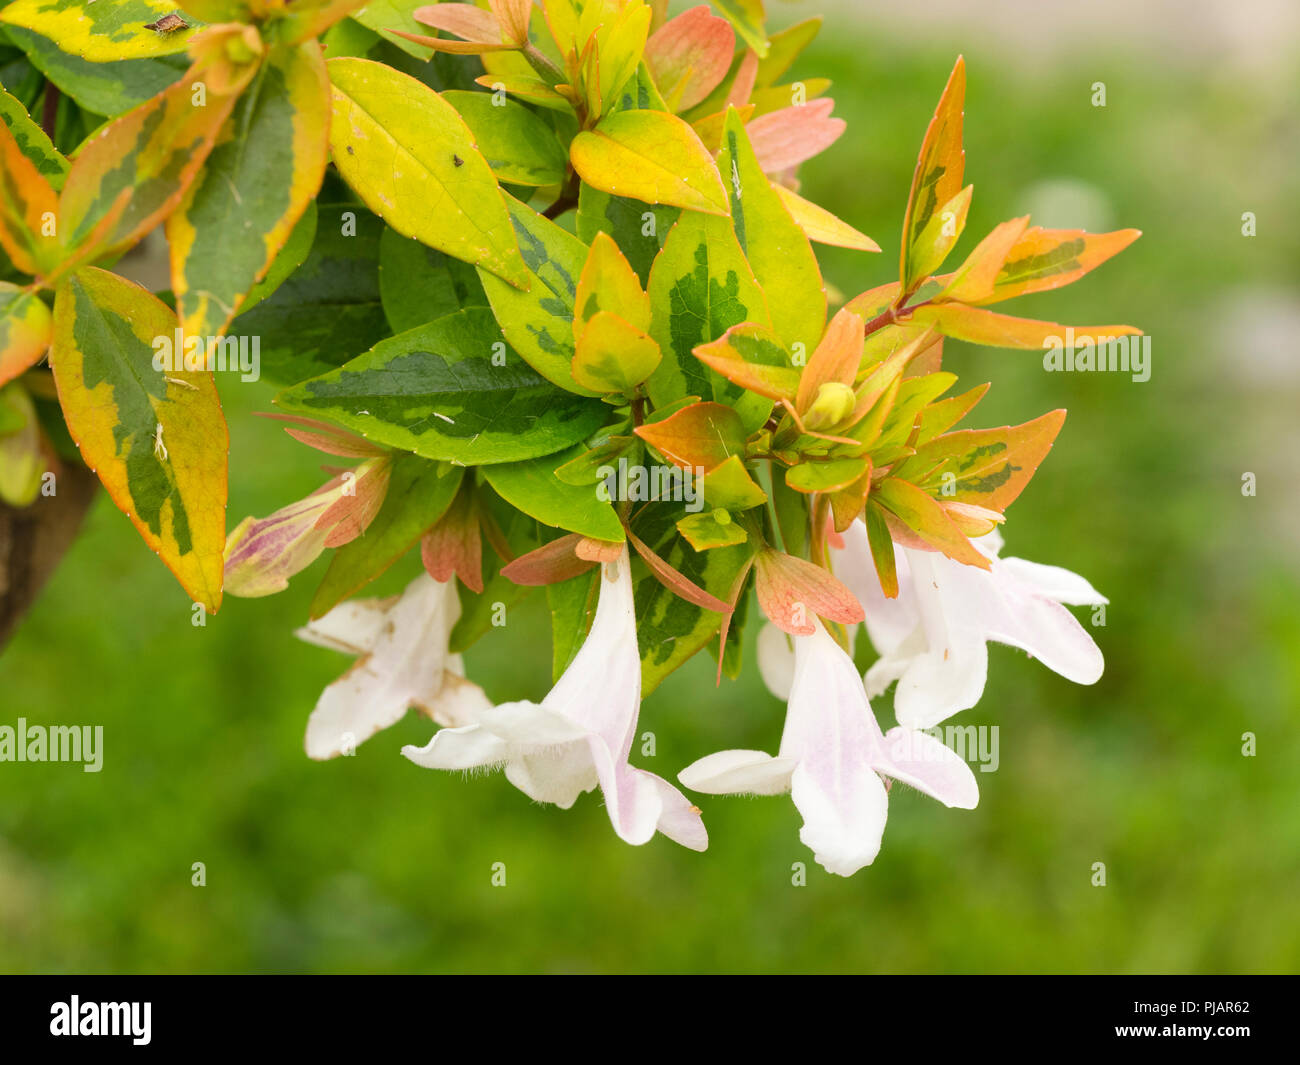 Gelben, goldenen und grünen Laub der Hardy immergrüner Strauch, Abelia x grandiflora 'Kaleidoscope', mit weißen Blumen Kontraste Stockfoto